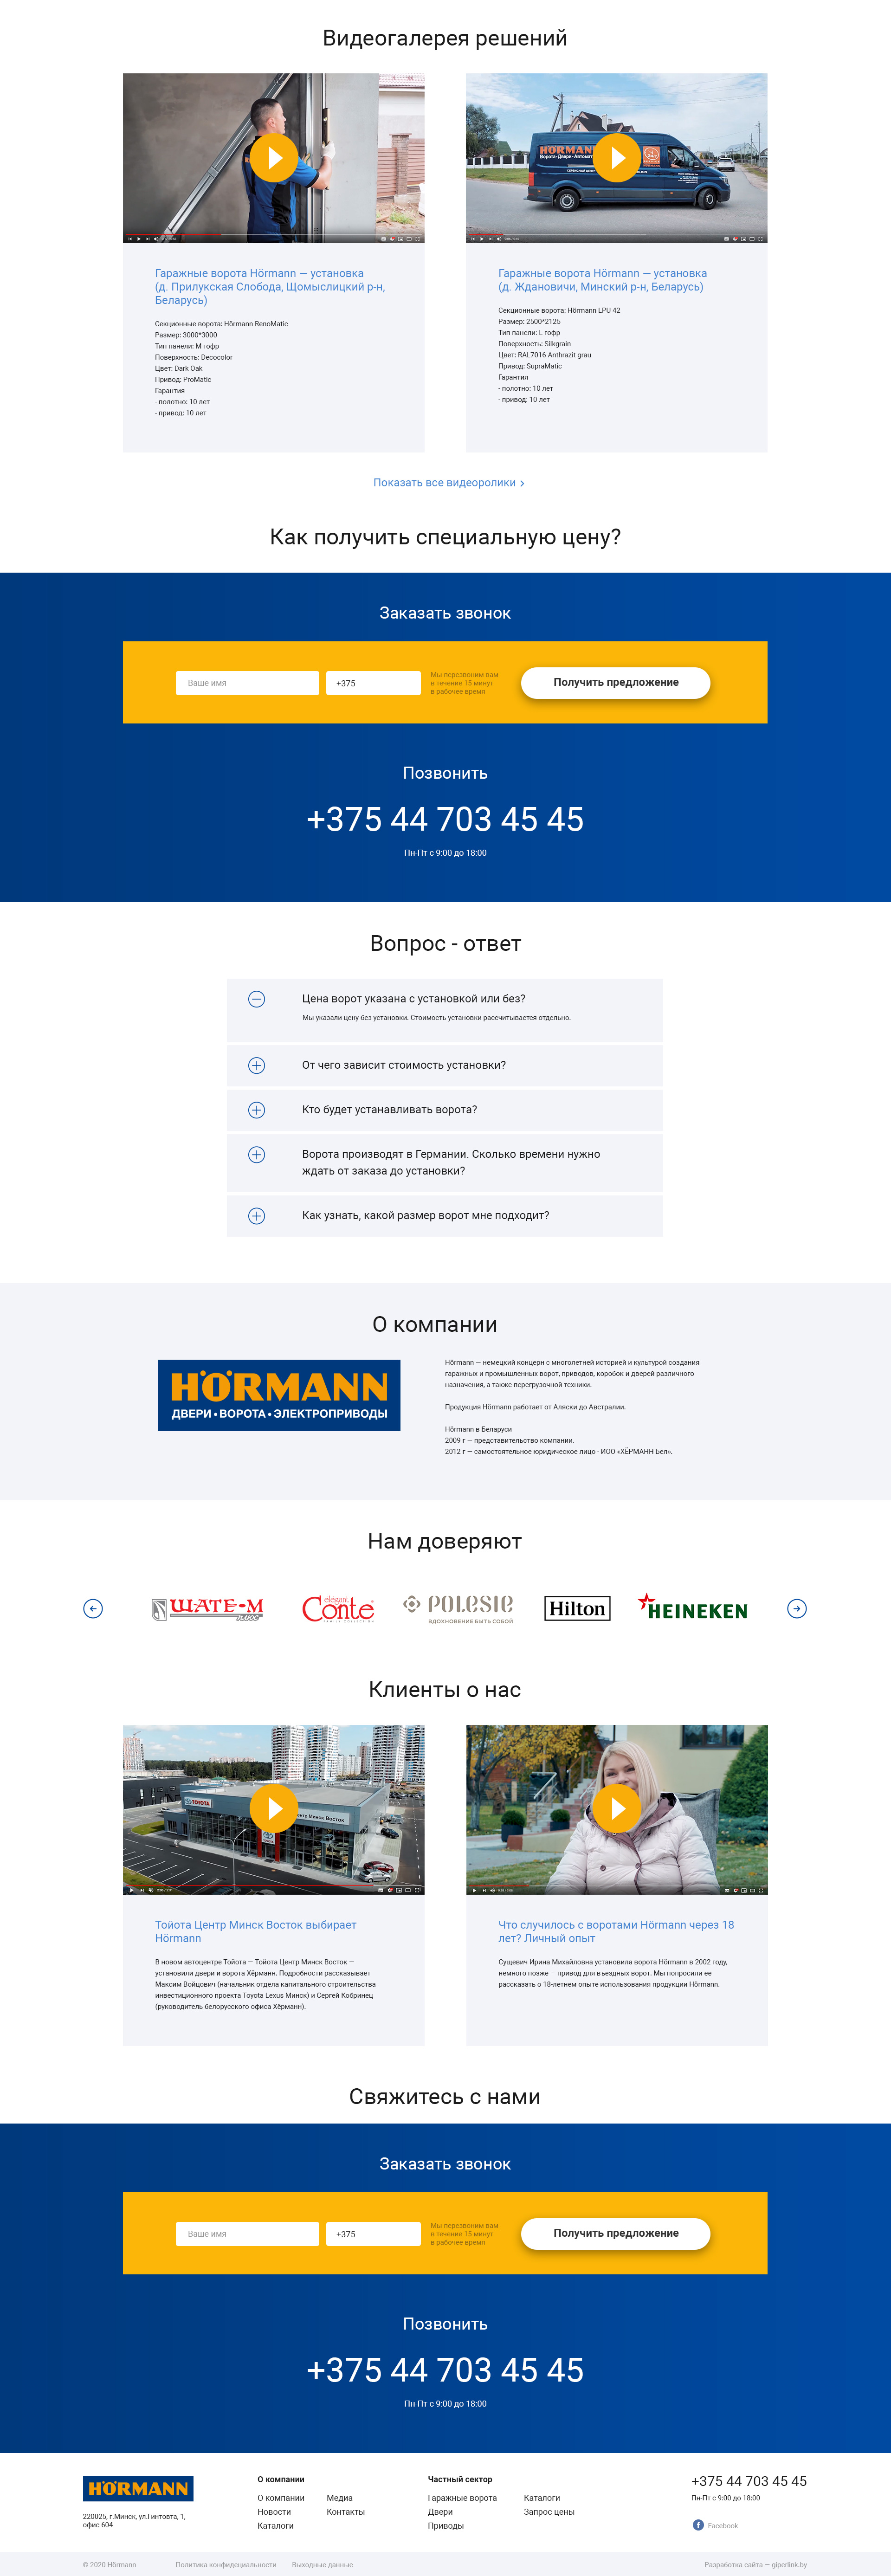 корпоративный сайт и каталог продукции — немецкий концерн hörmann (хёрманн).